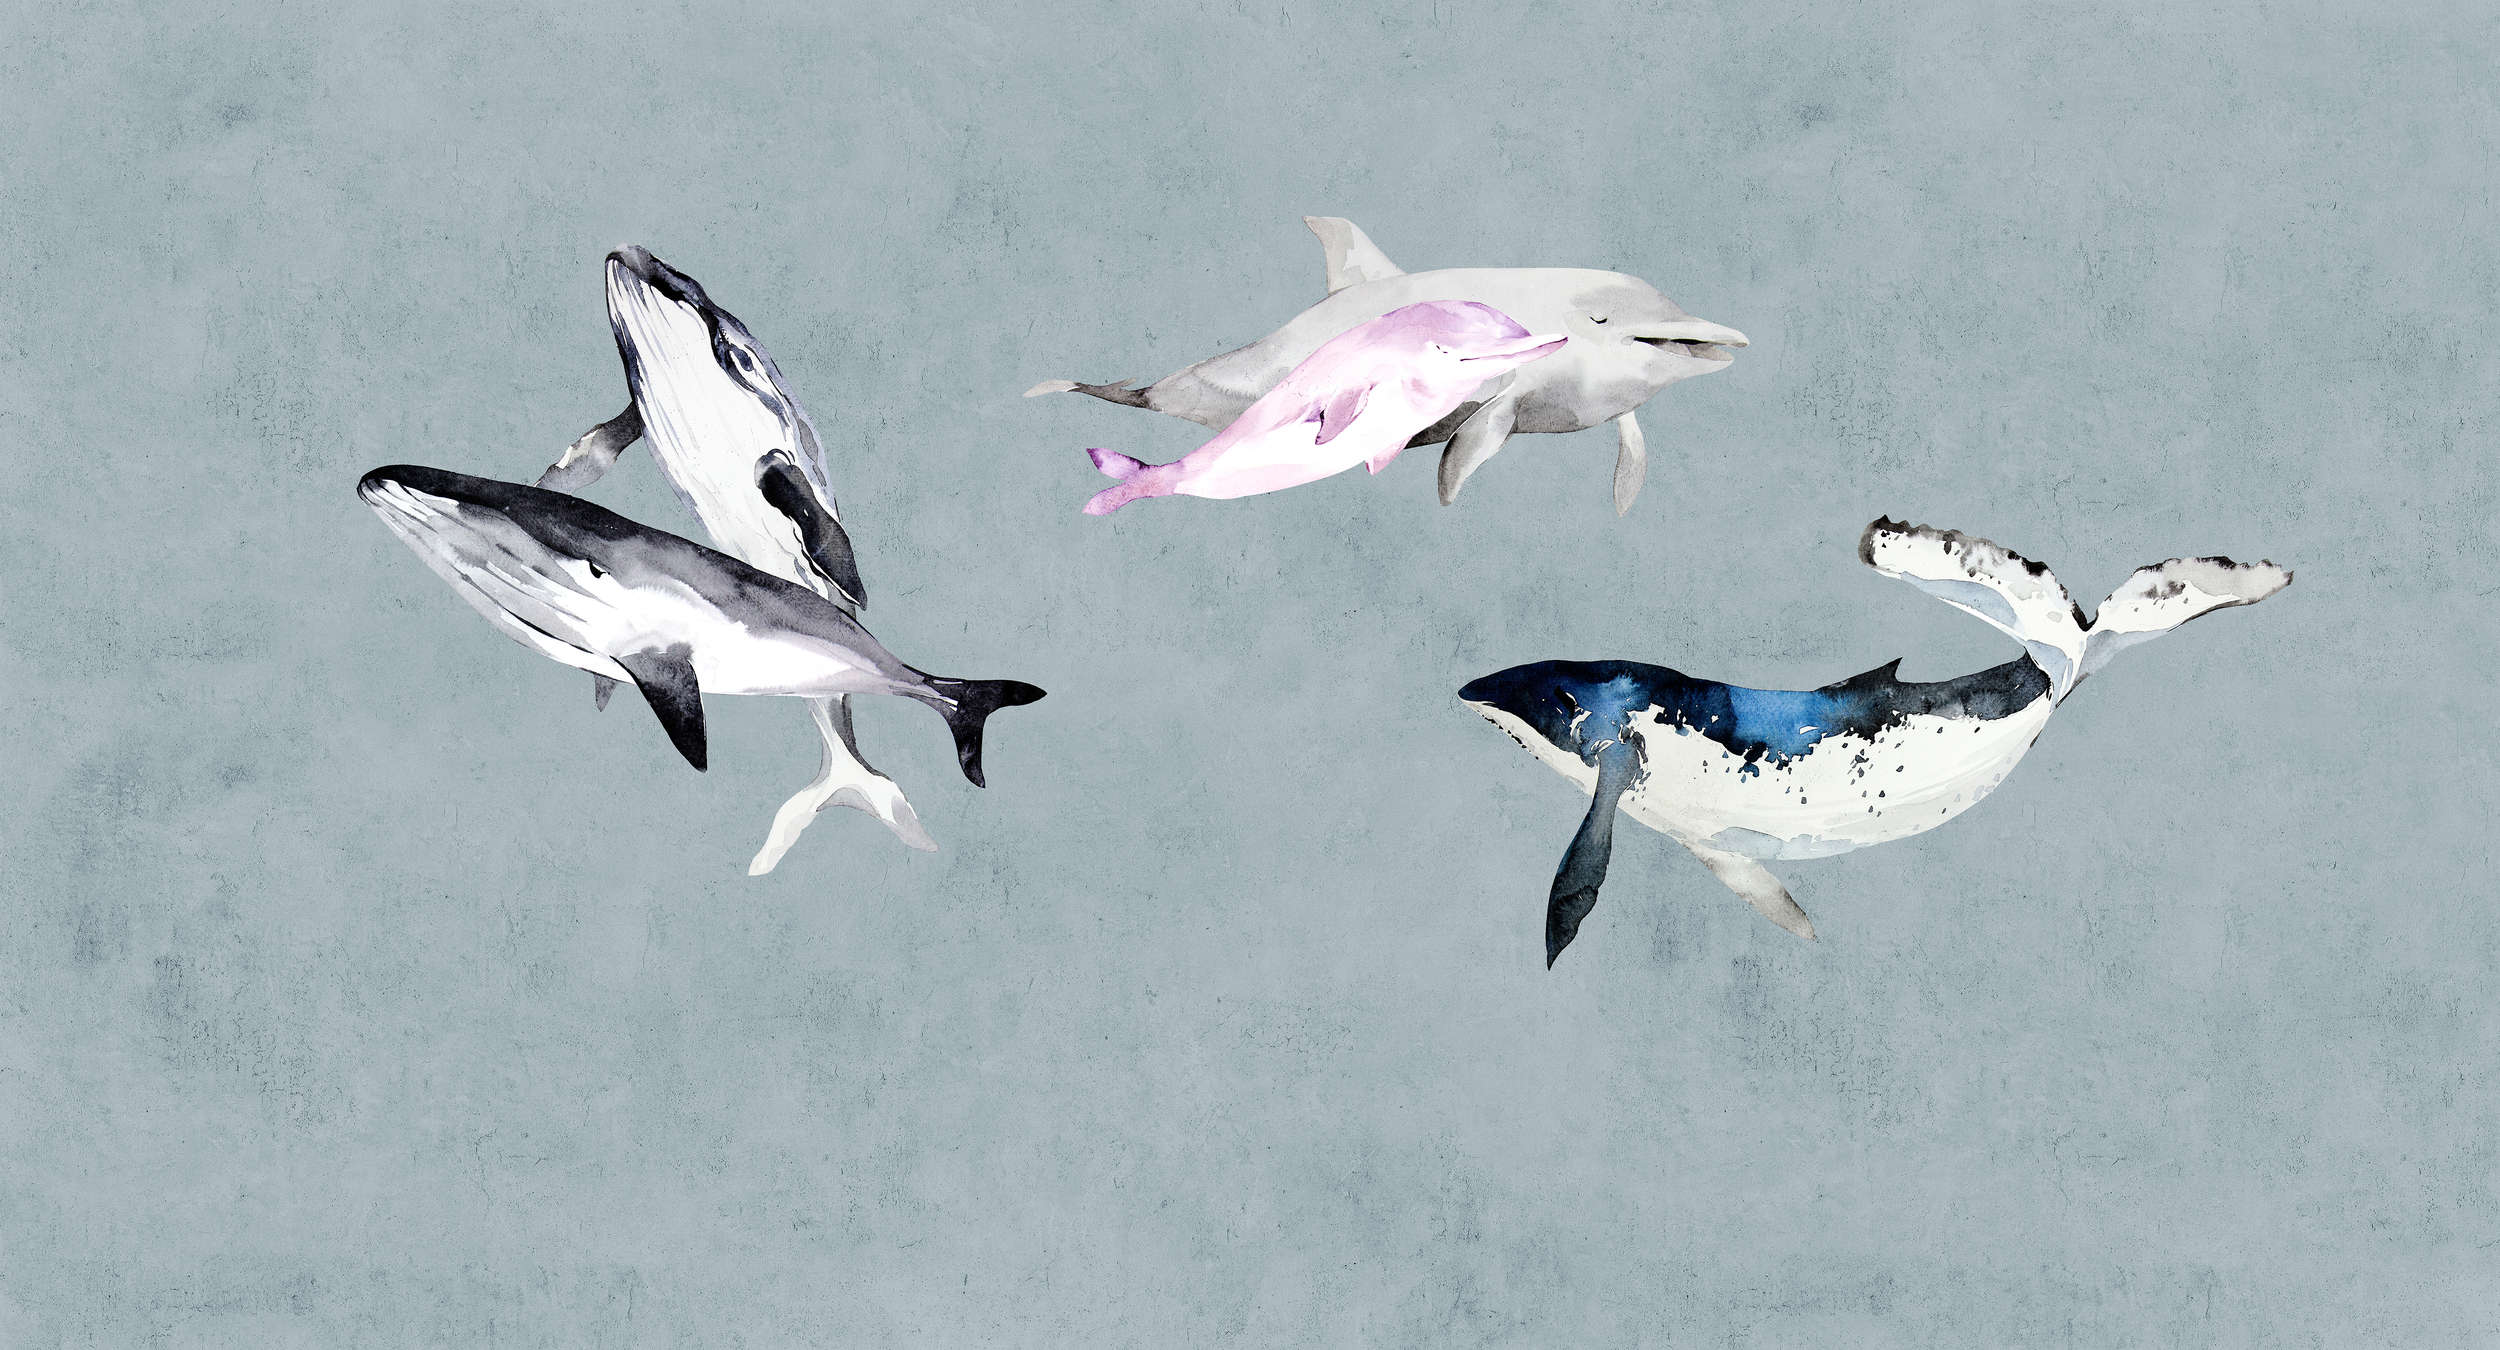             Oceans Five 1 - Sfondo acquerellato con balene e delfini
        